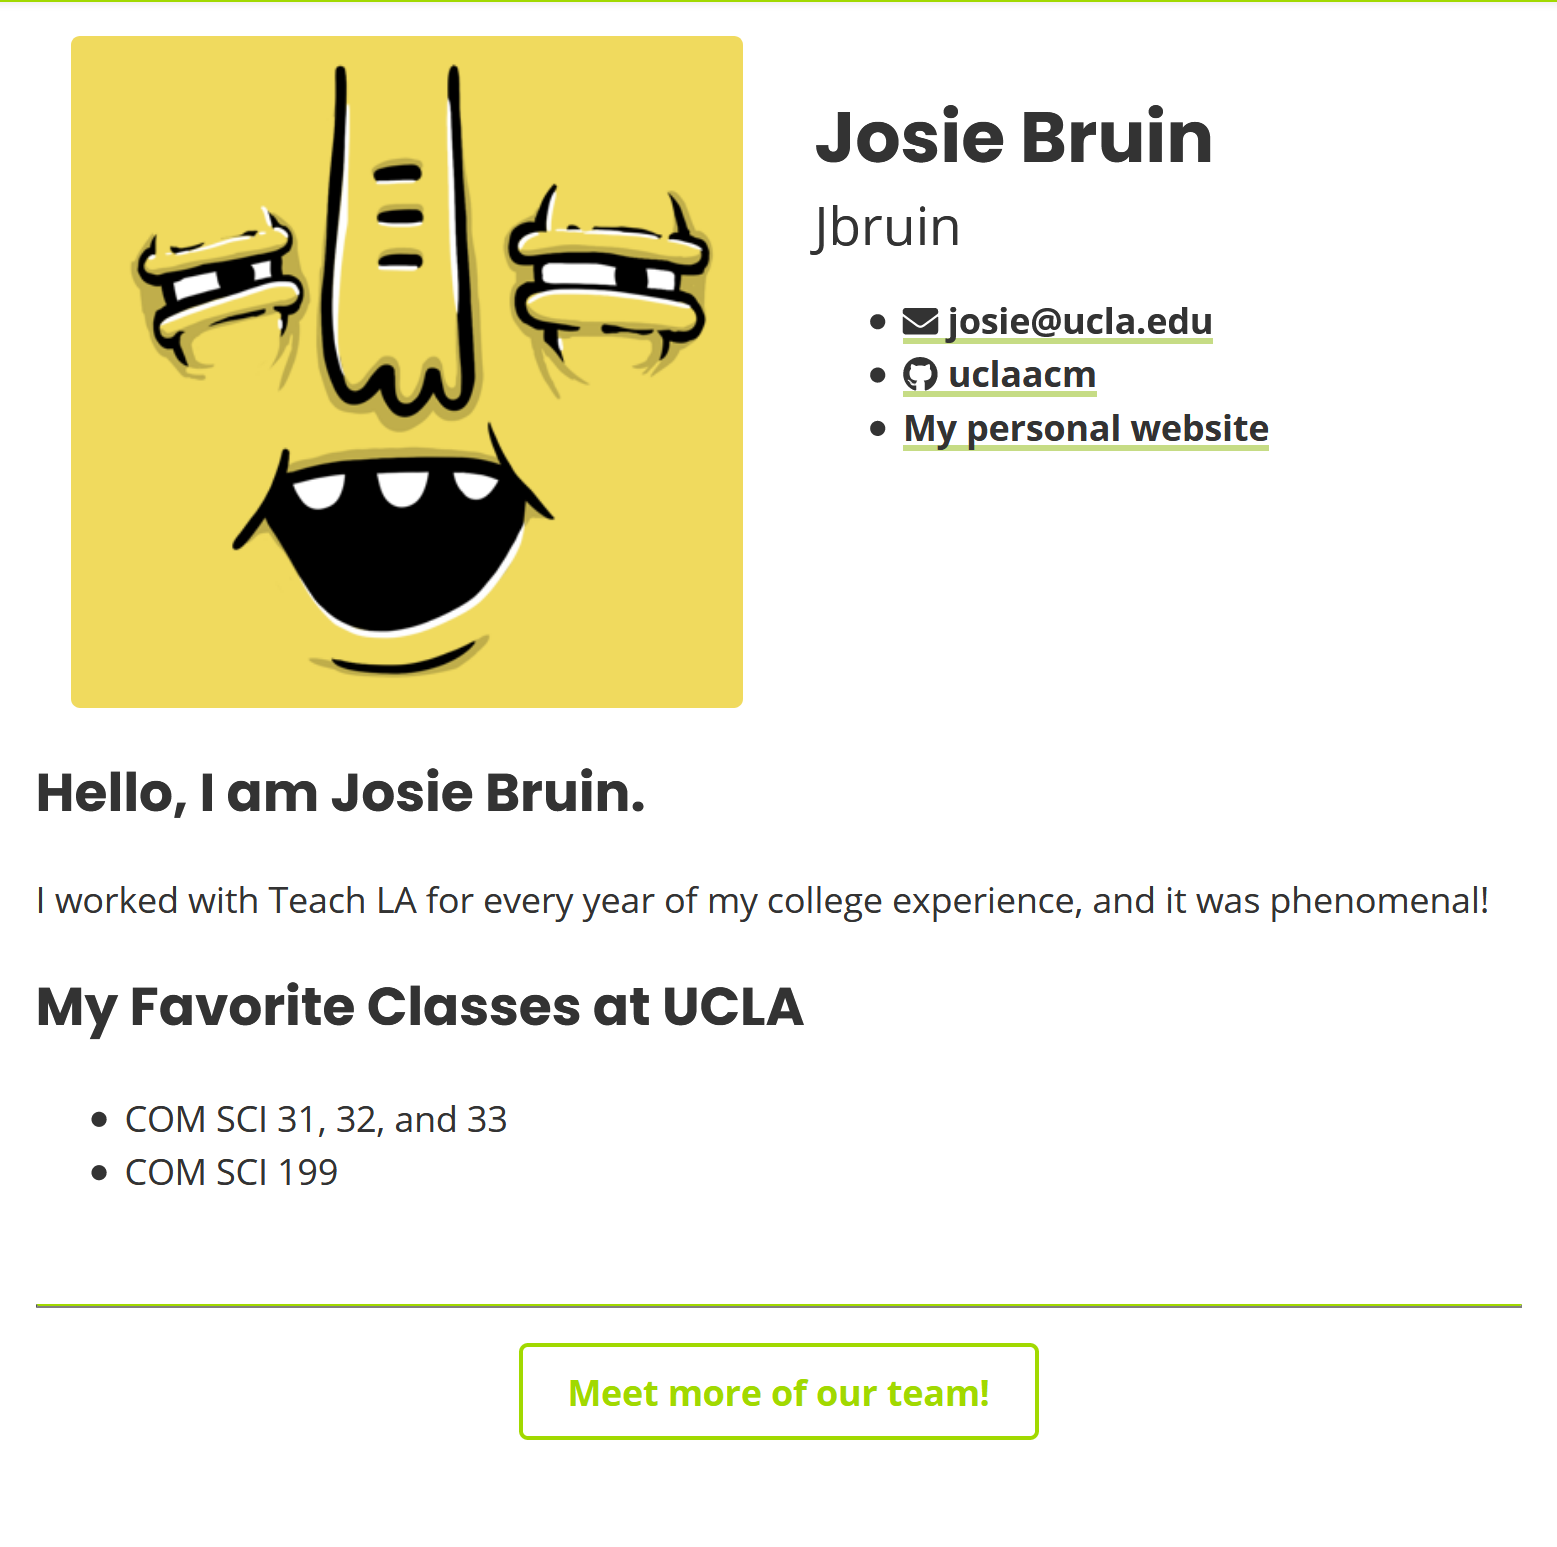 josie bruin's team page